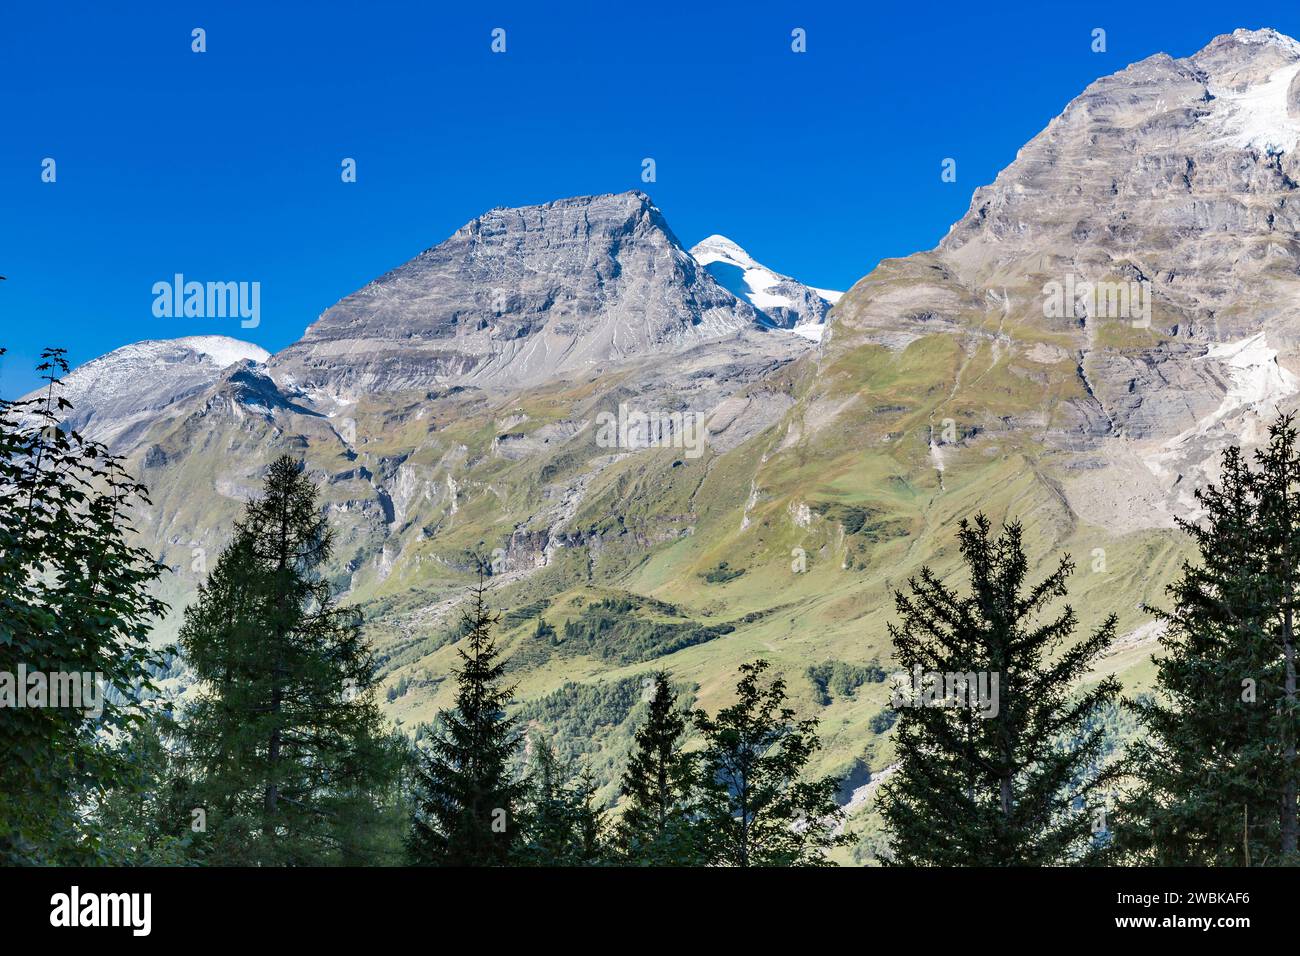 View of the mountains, Fuscher Breitkopf, 3154 m, Hohe Dock, 3348 m, Großer Bärenkopf, 3396 m, Vorderer and hinterer Bratschenkopf, 3401 and 3413 m, Grossglockner High Alpine Road, Hohe Tauern National Park, Austria, Europe Stock Photo